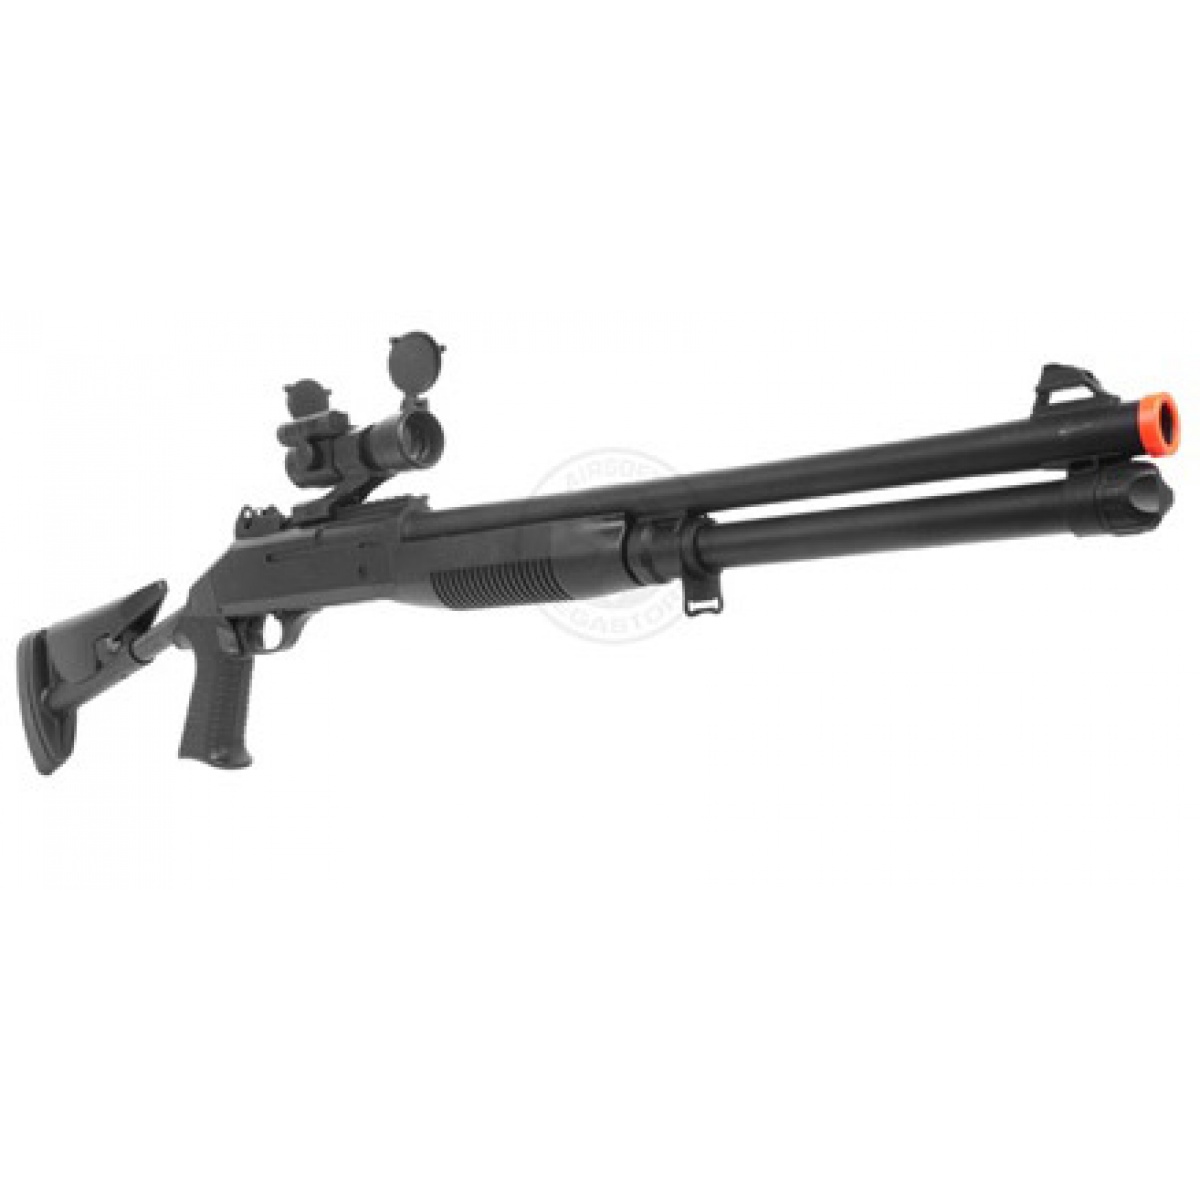 Booligan's Airsoft Reviews: TSD M1014 Multishot Shotgun